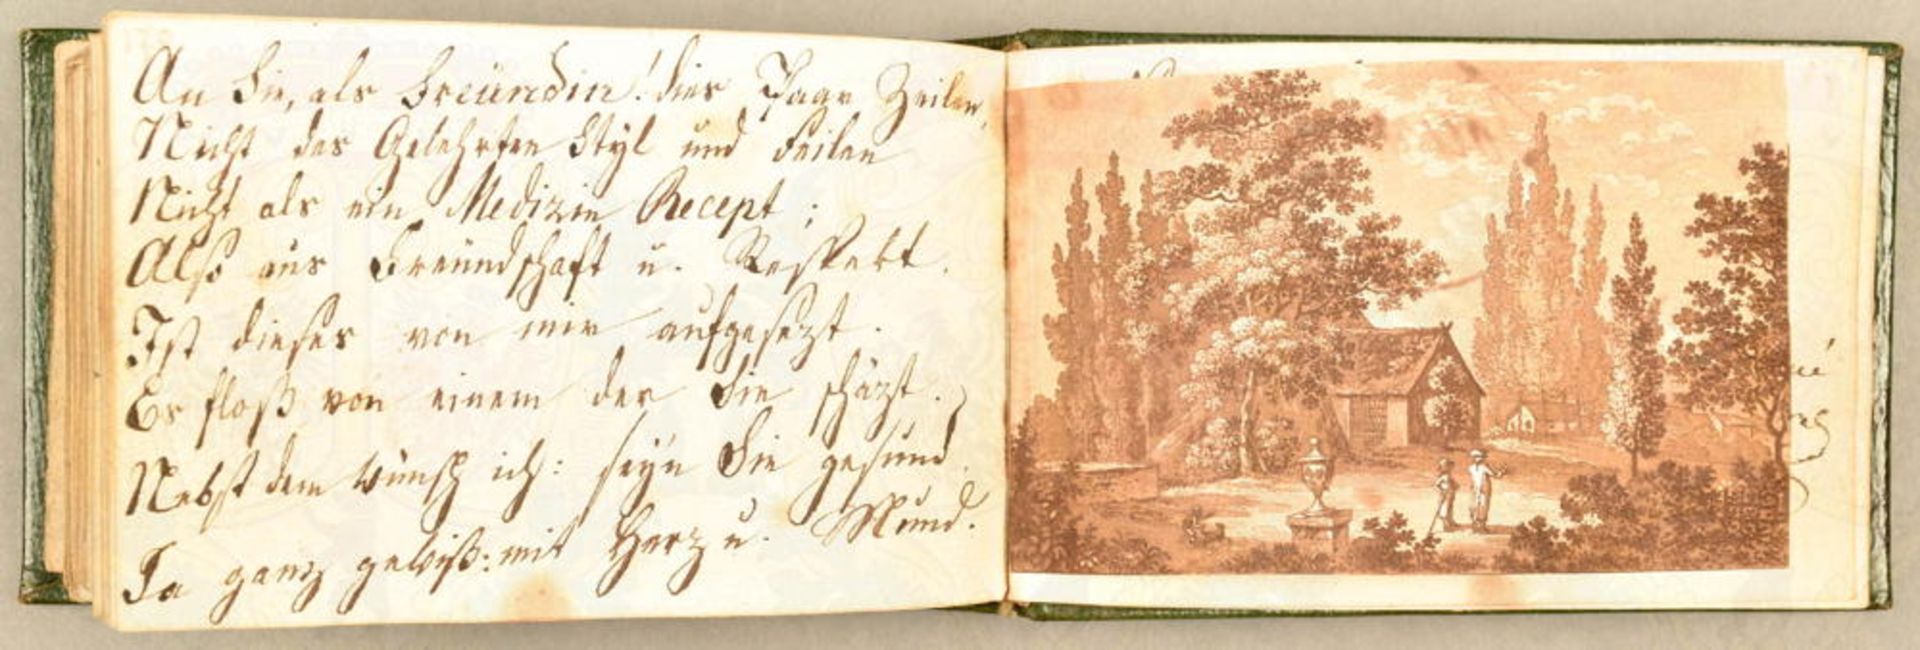 Poesie-Album einer Dame 1813-1844 - Image 4 of 4